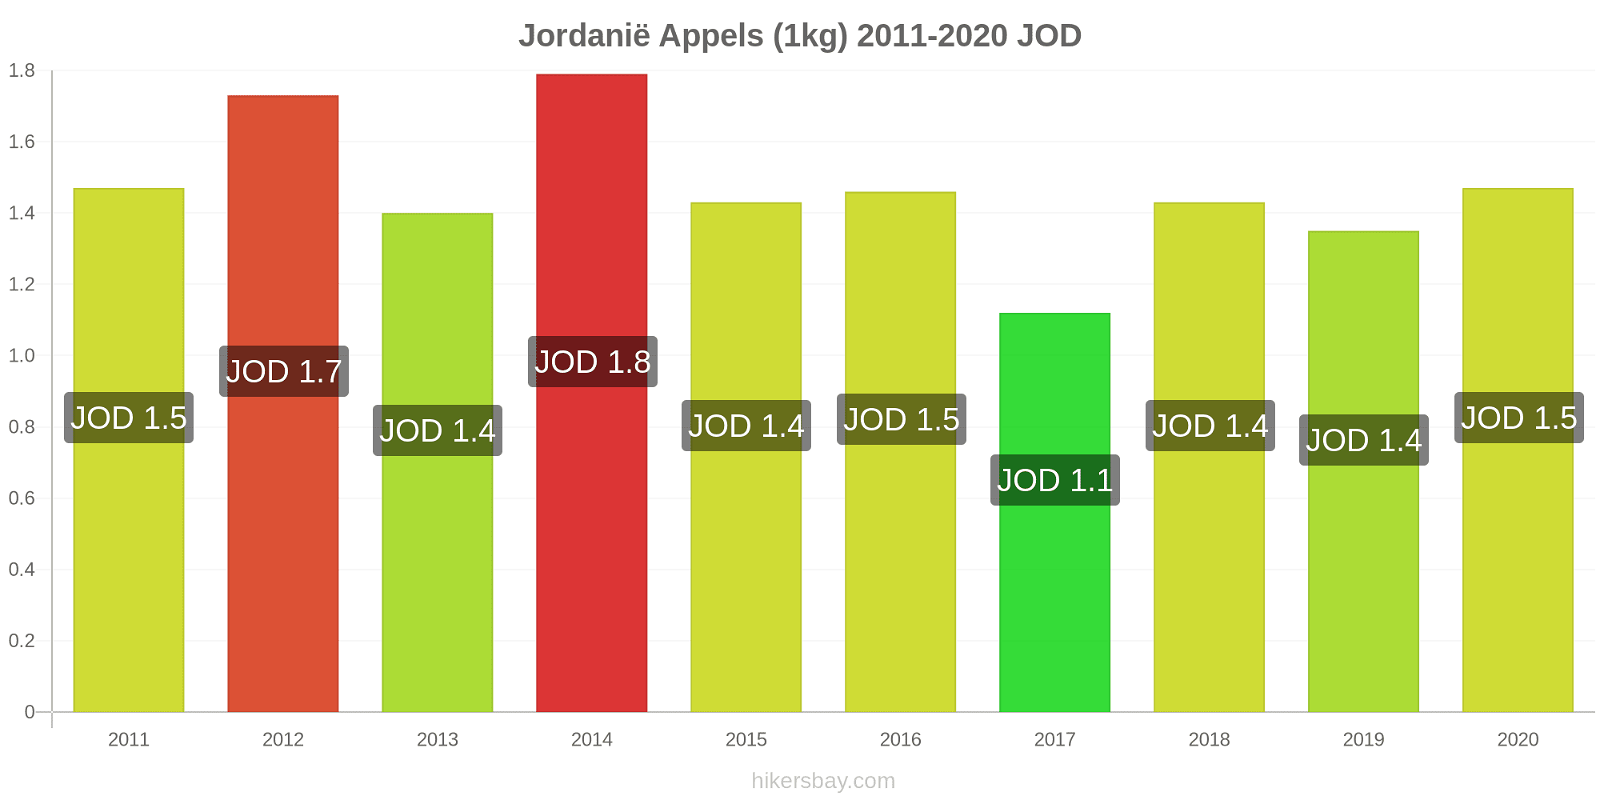 Jordanië prijswijzigingen Appels (1kg) hikersbay.com